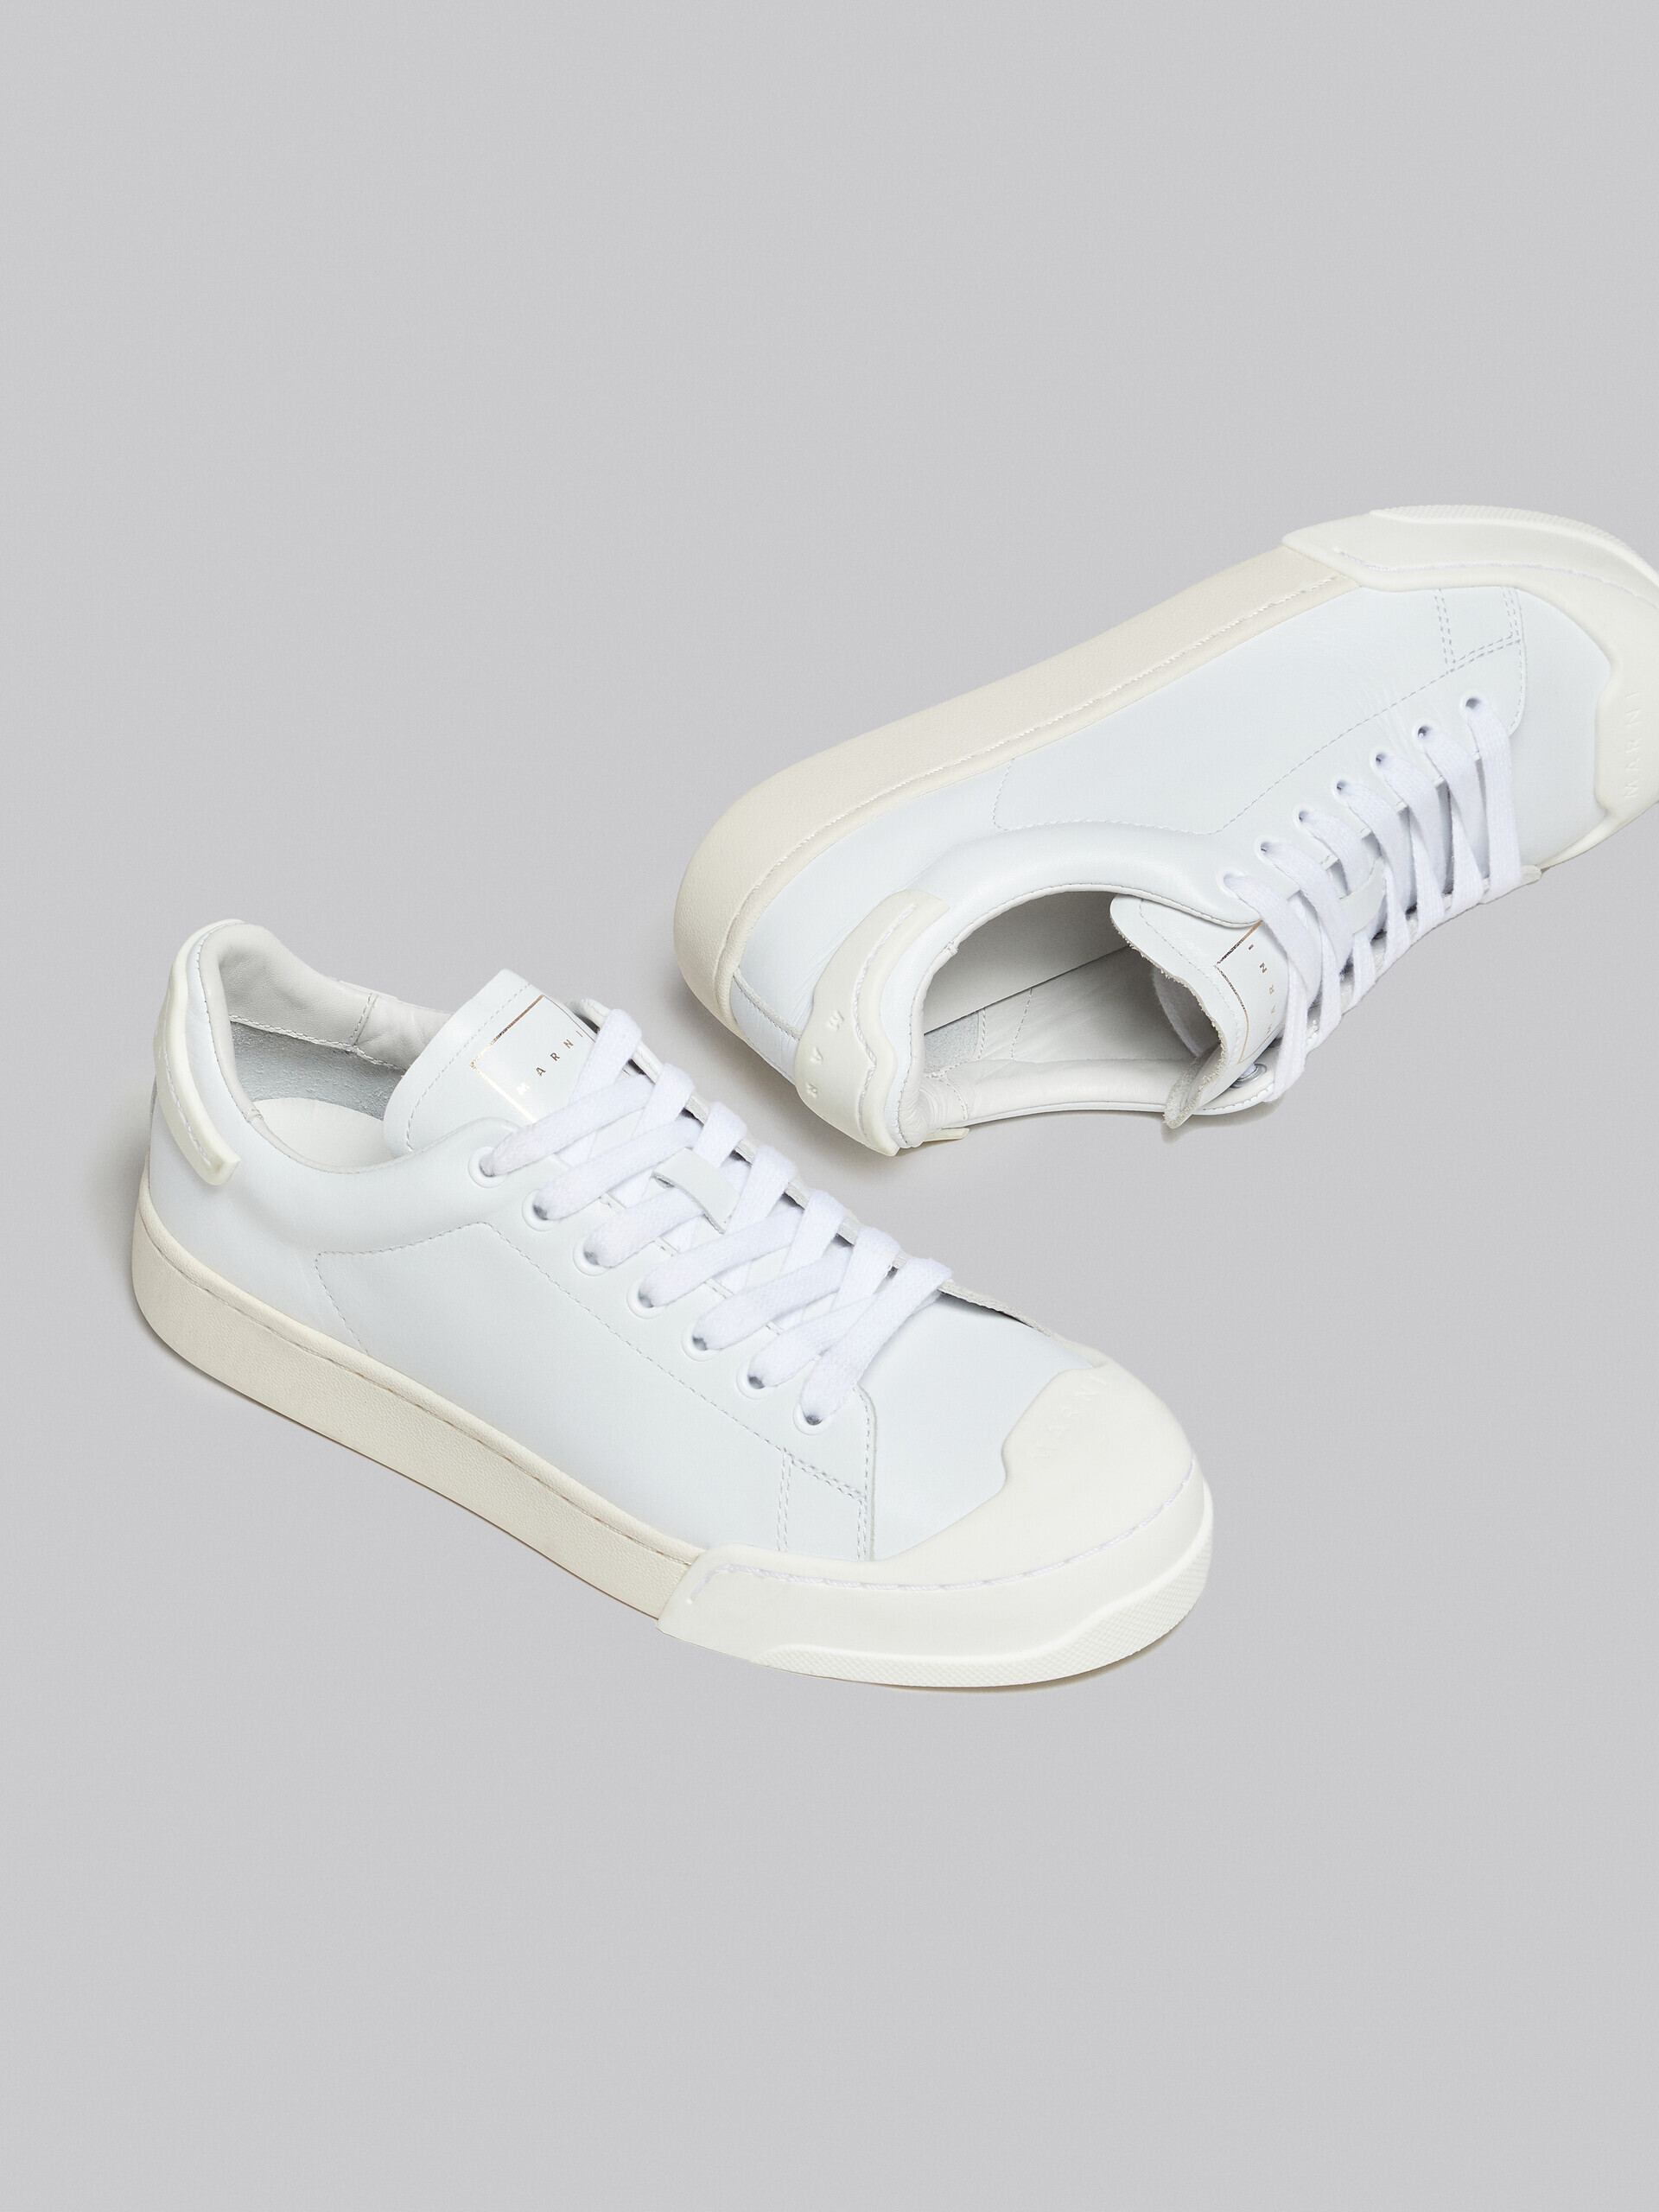 Sneakers Dada Bumper aus weißem Leder - Sneakers - Image 5